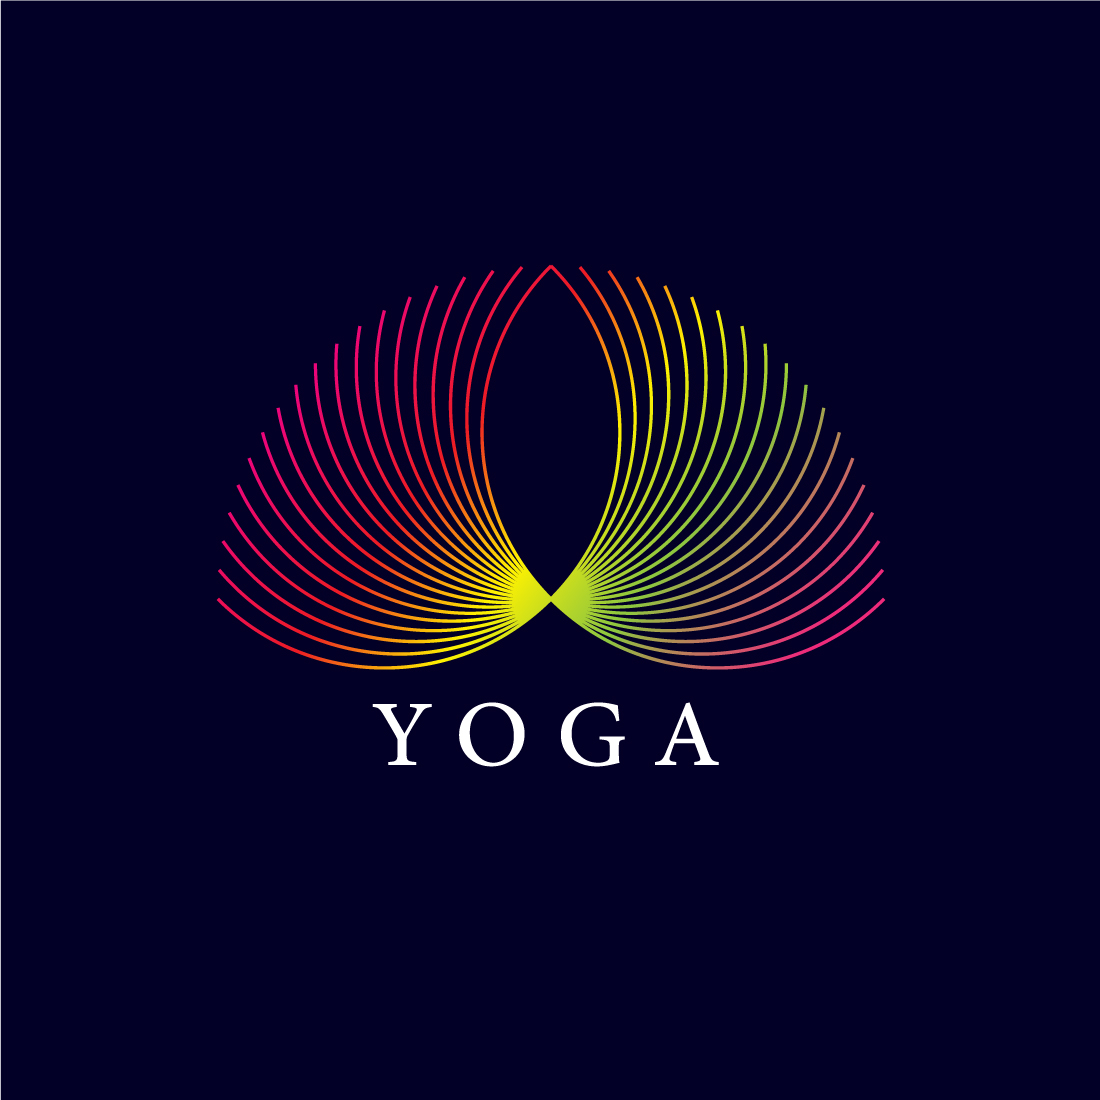 Yoga Line Art Logo Design preview image.